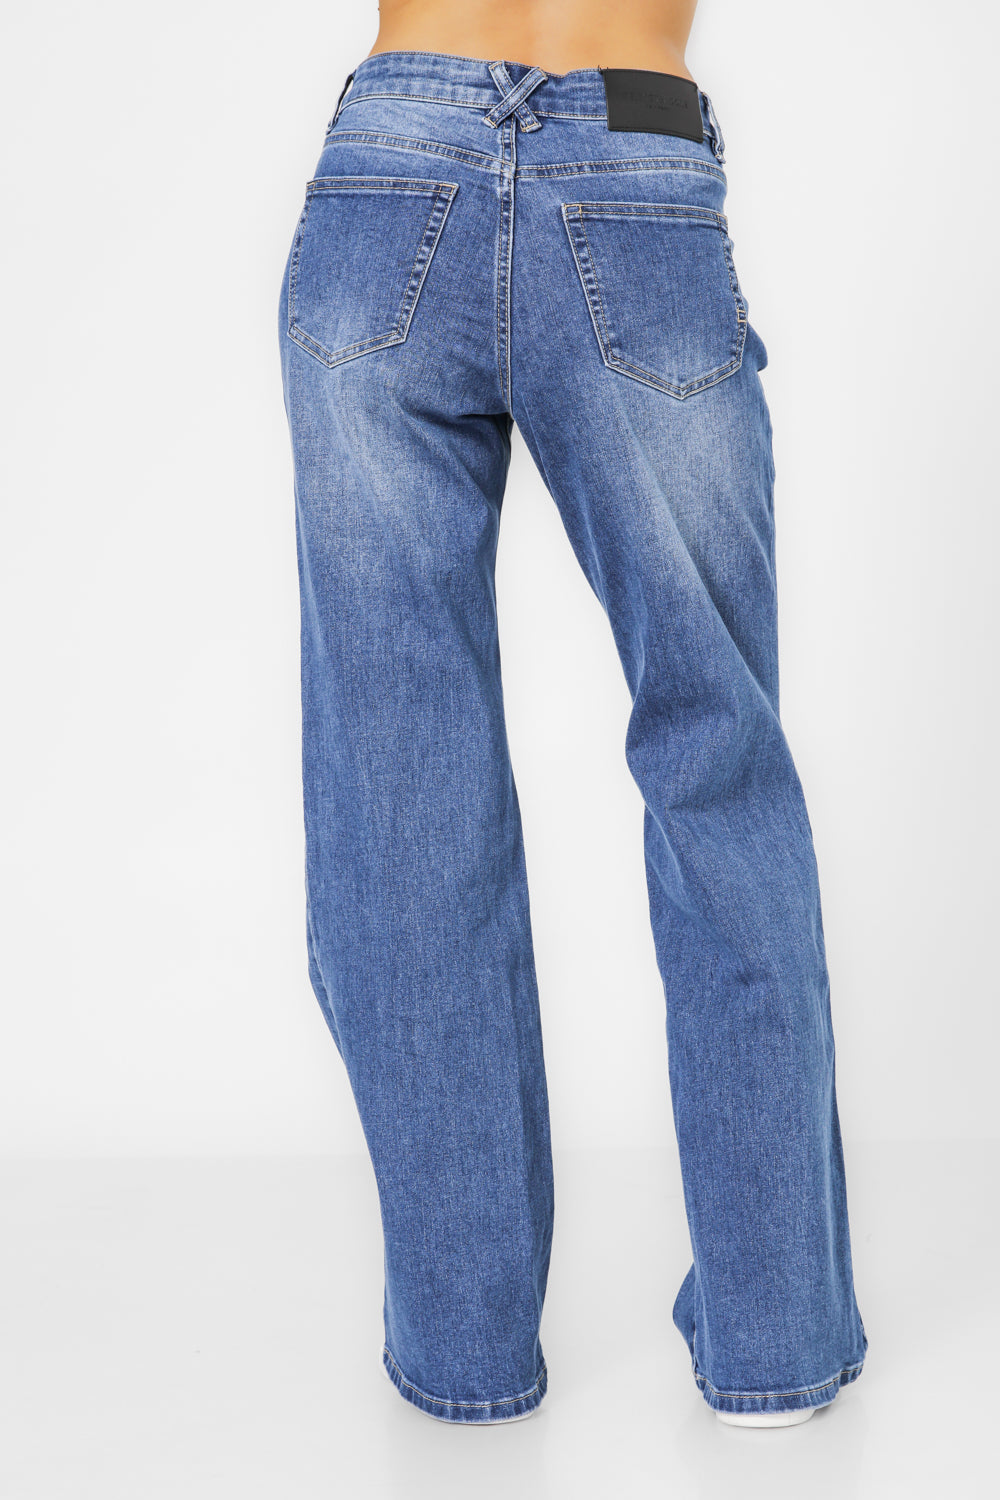 ג'ינס בוטקאט בצבע כחול כהה